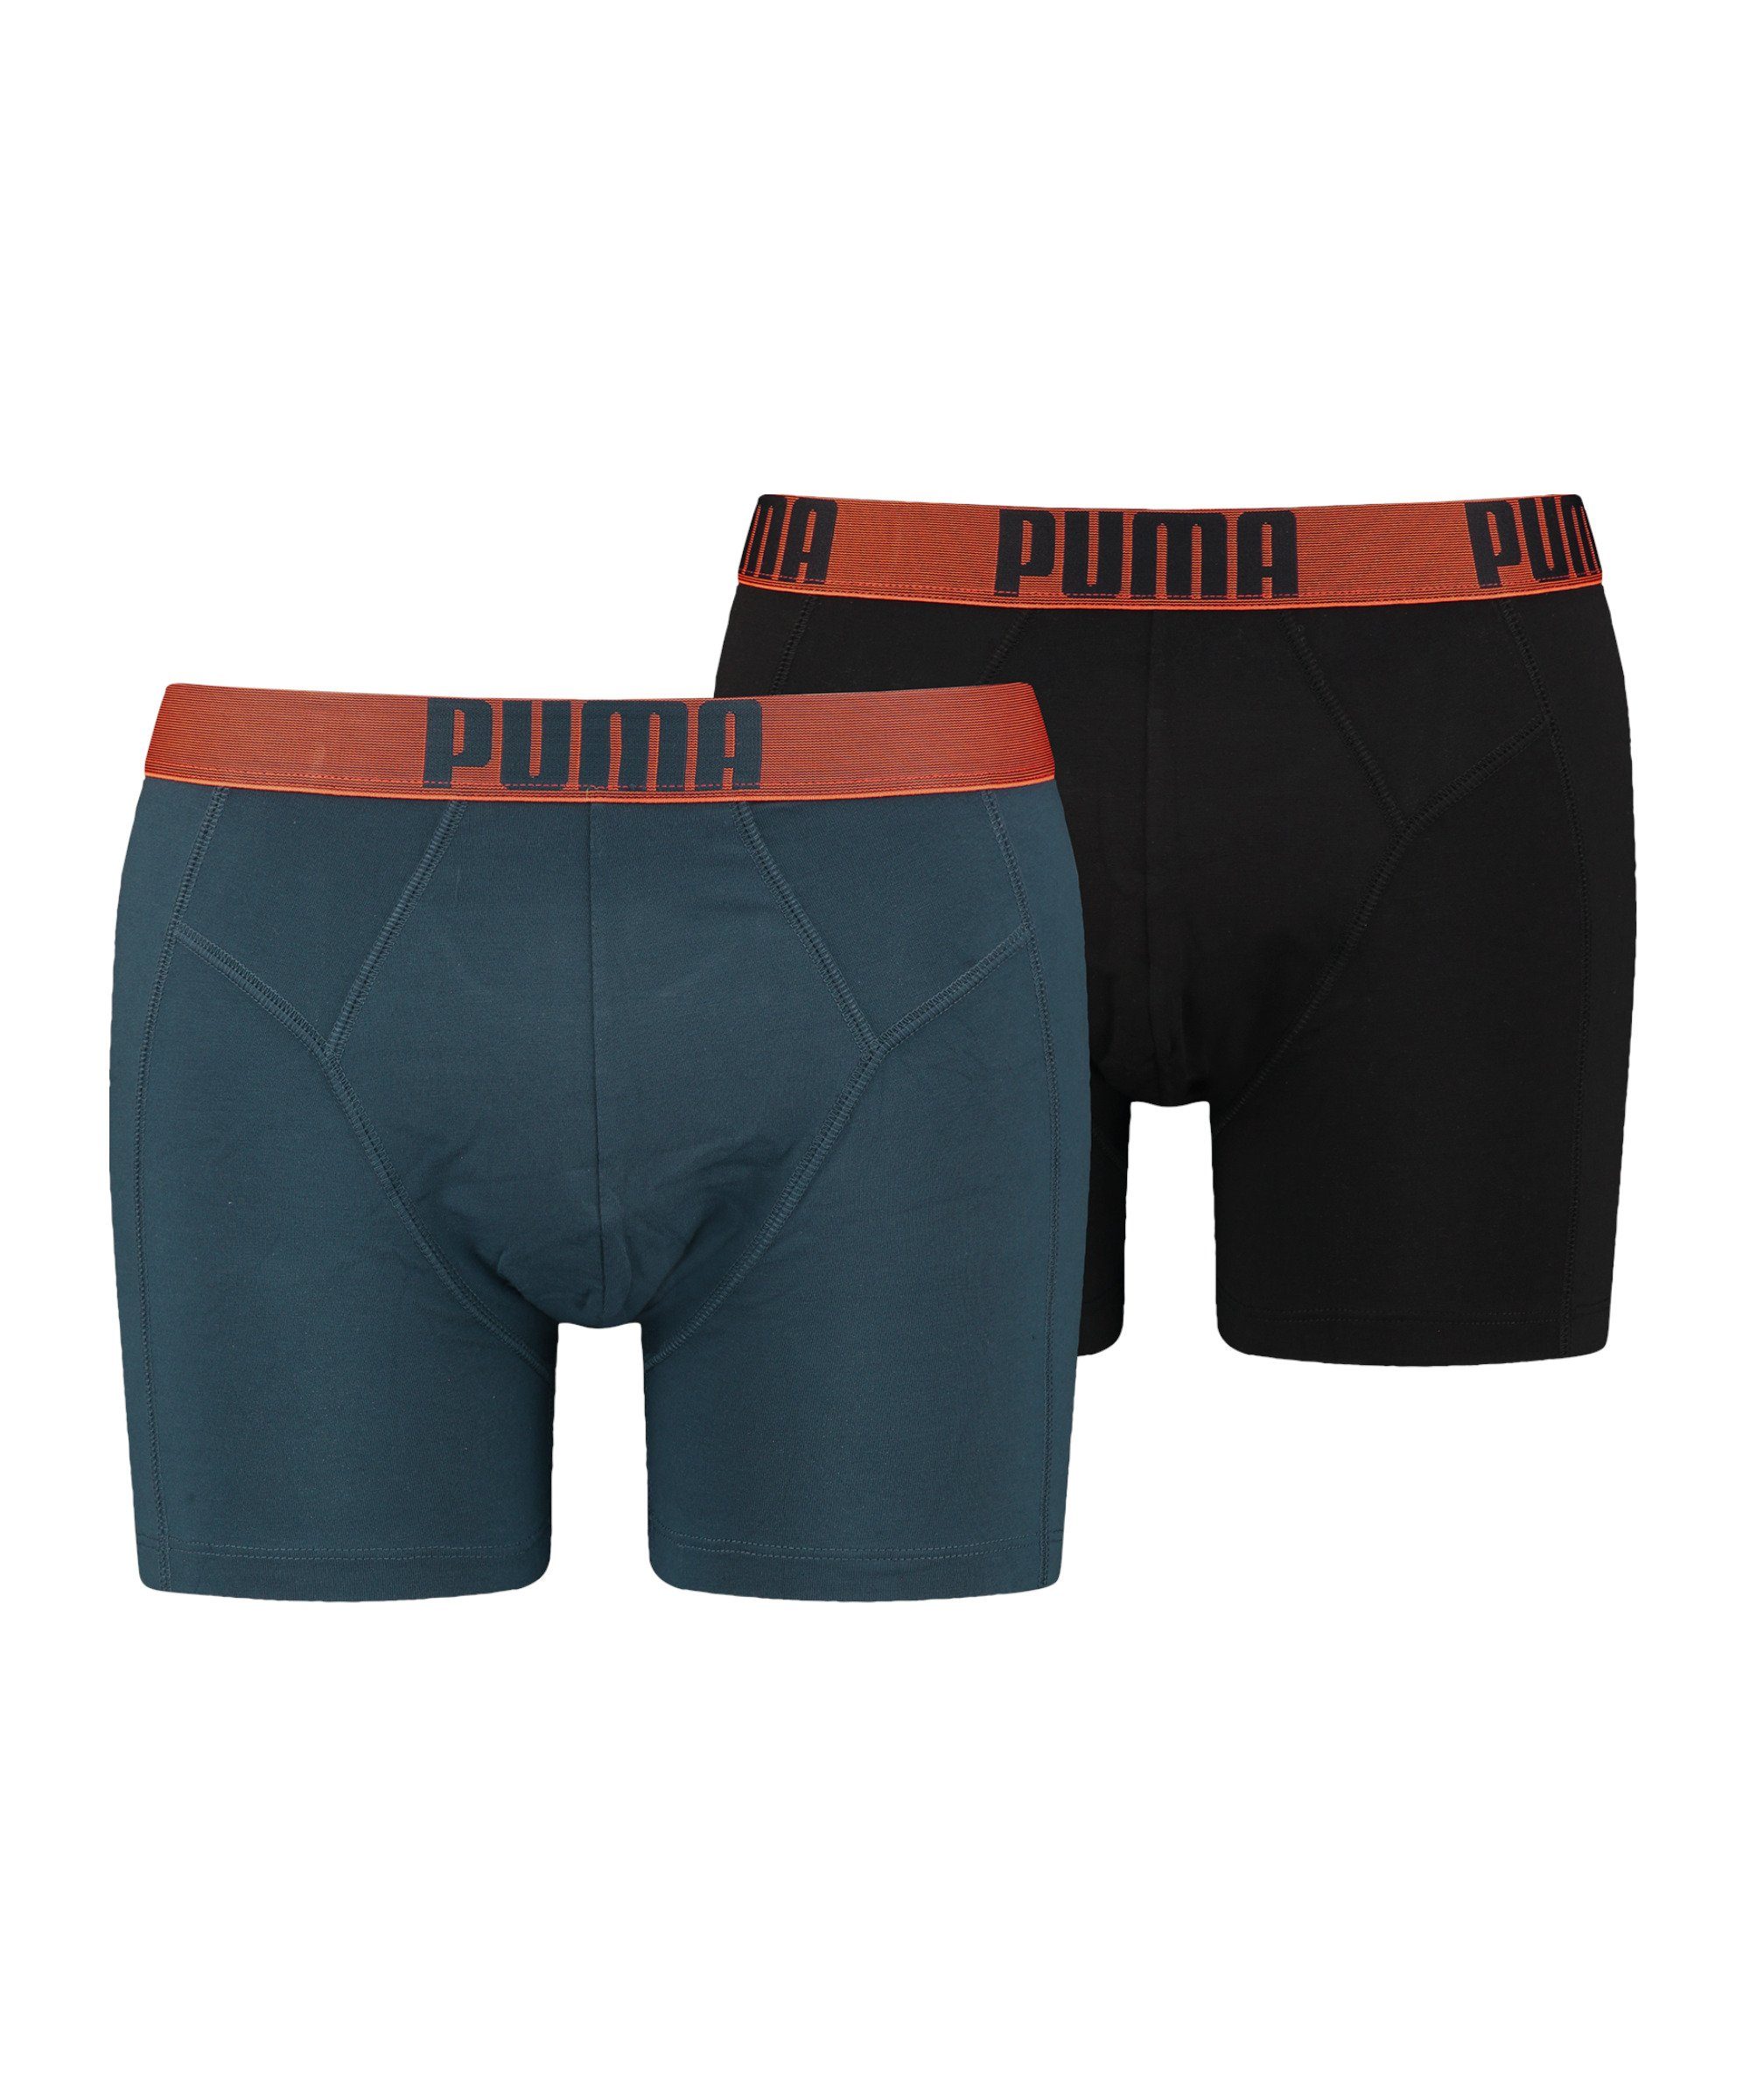 PUMA Boxershorts New Pouch Boxer 2er Pack default